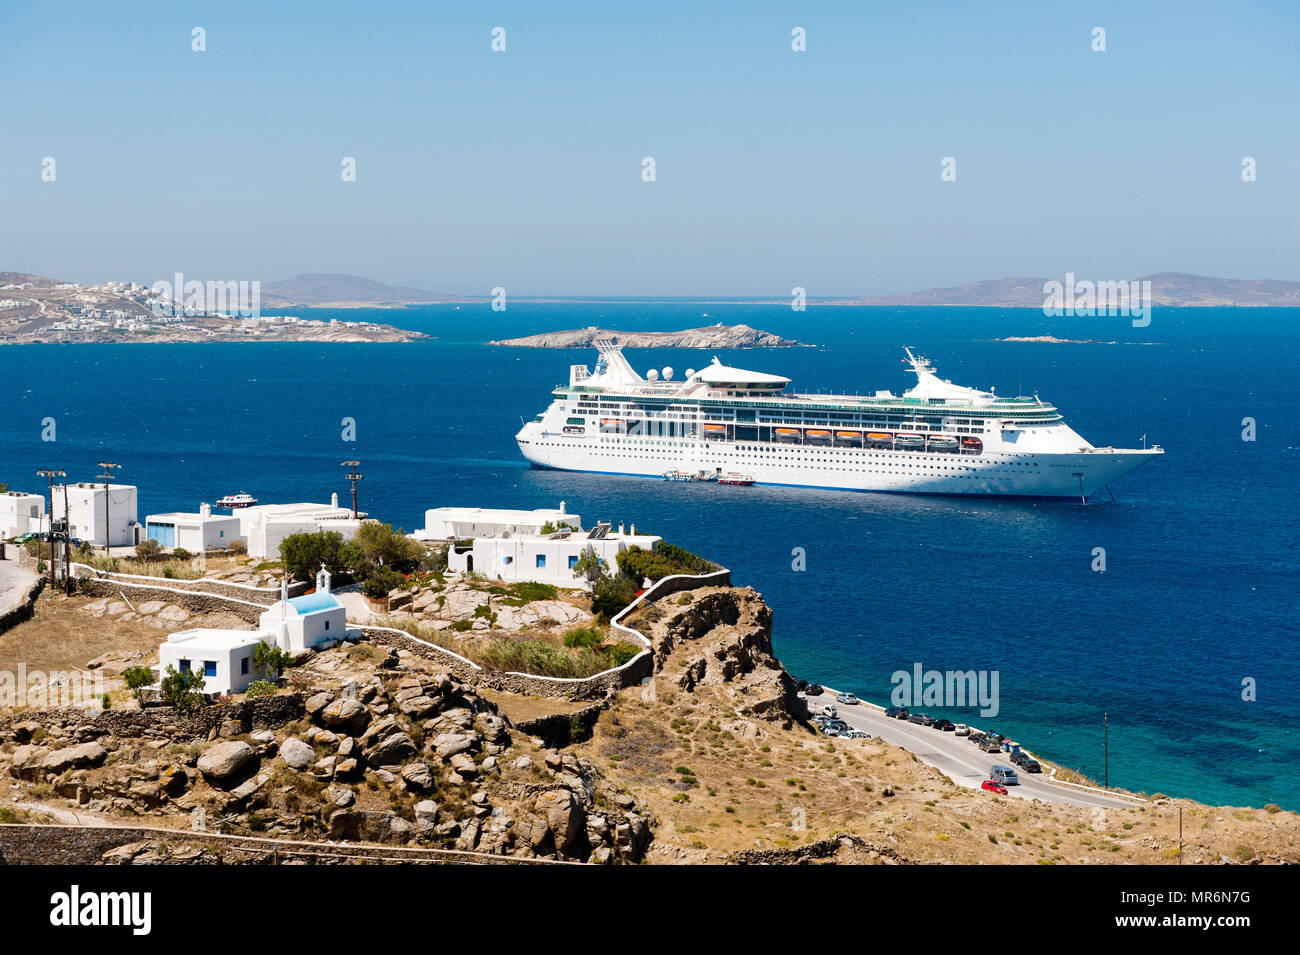 Grecia: Mykonos. 2012/06/08 crociera nelle Cicladi MS grandeur dei mari, la nave da crociera di proprietà di e gestito da Royal Caribbean International, giacente in corrispondenza di Foto Stock